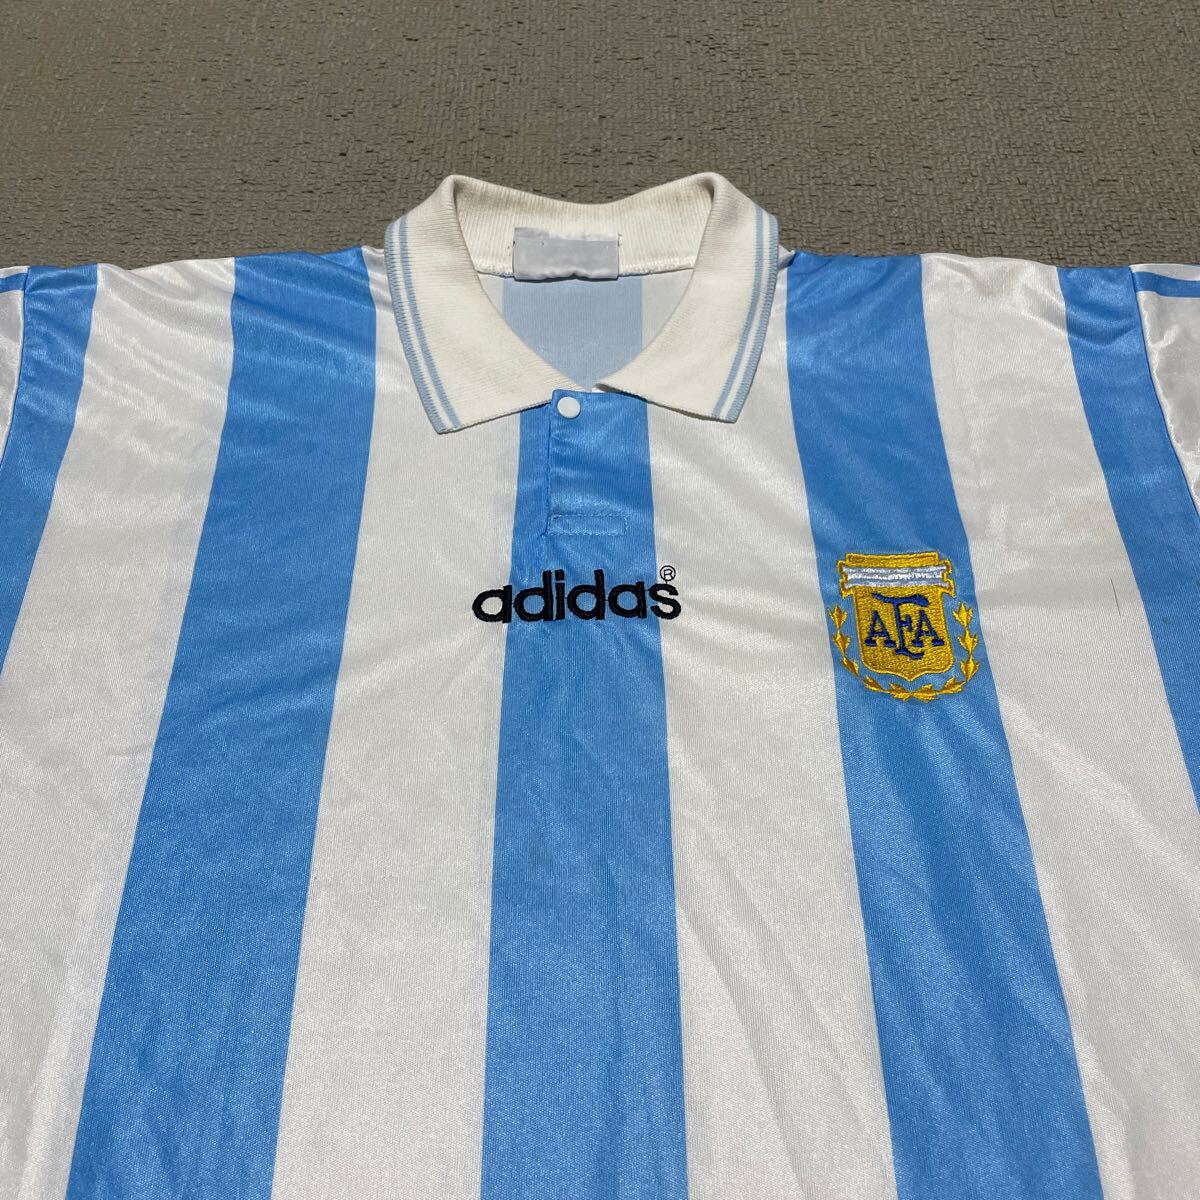 adidas アディダス サッカー アルゼンチン代表 94 home レプリカ ユニフォーム シャツ M 1994 アメリカ ワールドカップ マラドーナ_画像3